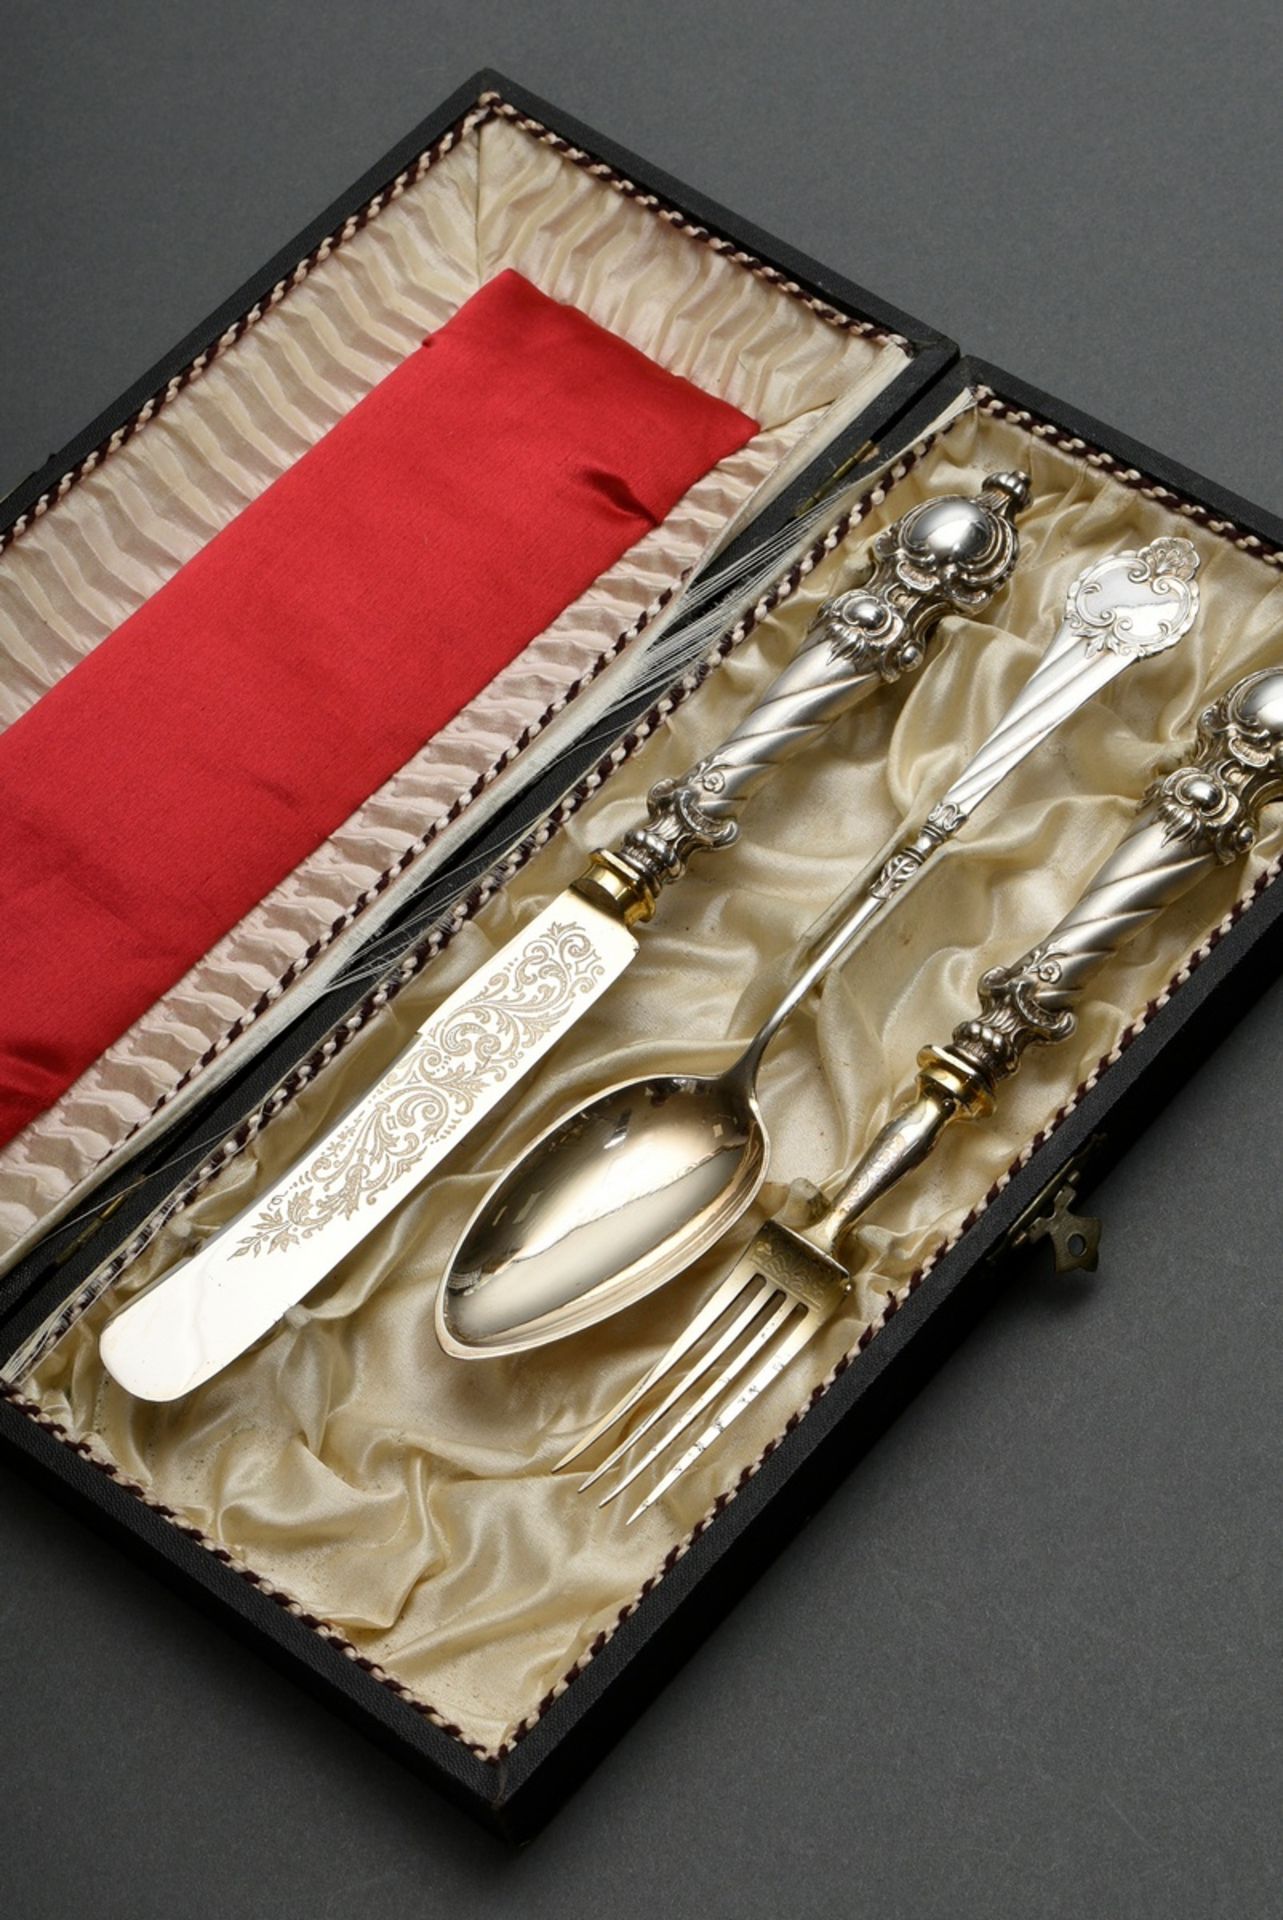 Dreiteiliges Taufbesteck: Messer, Gabel und Löffel mit opulenten Griffen und floral gravierter Laff - Bild 2 aus 6